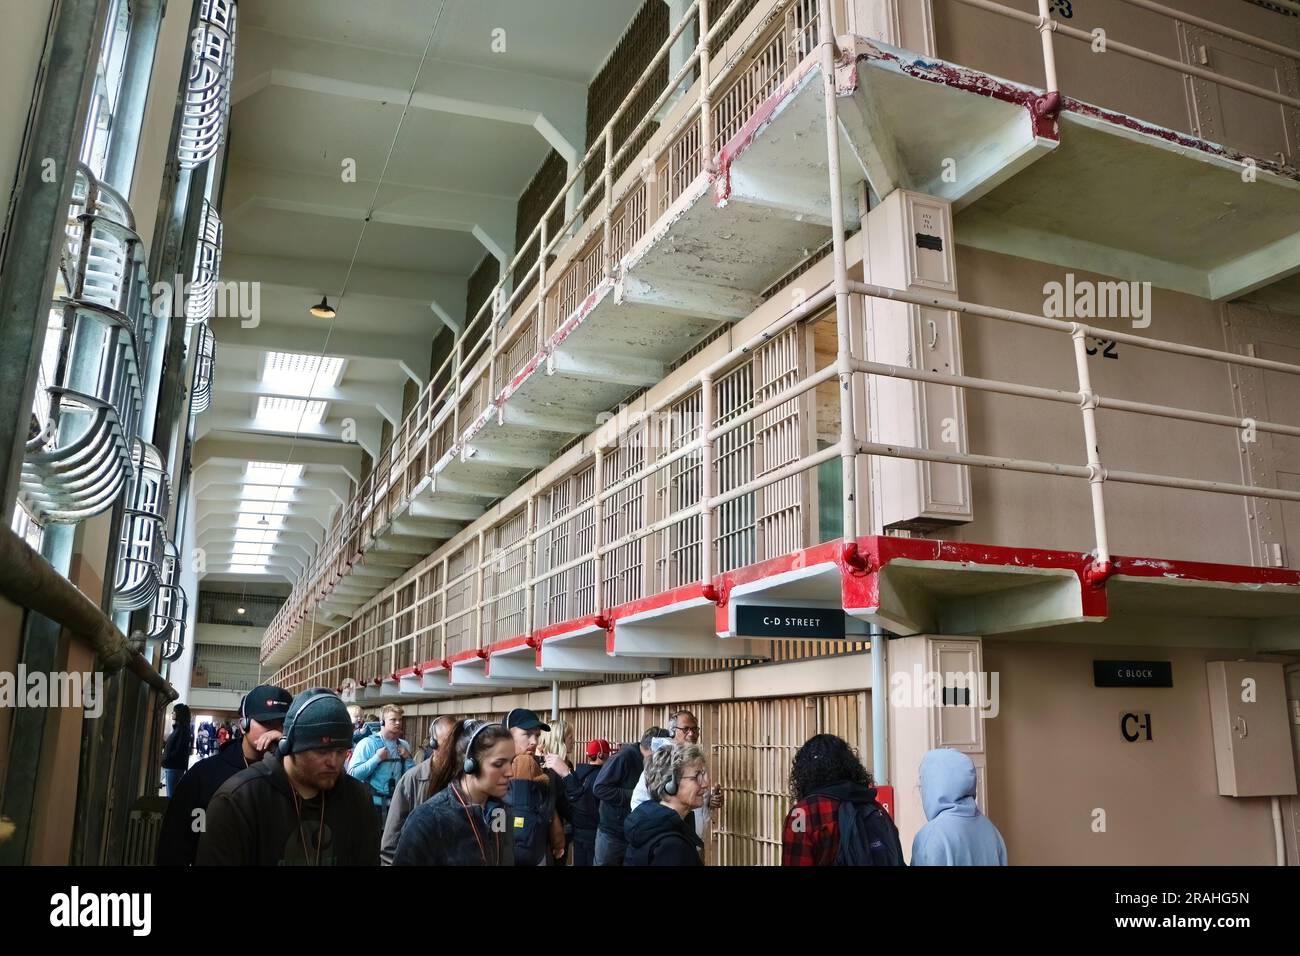 Touristes à l'intérieur du pénitencier fédéral d'Alcatraz regardant les couloirs avec des cellules de prison Alcatraz Island San Francisco Californie USA Banque D'Images